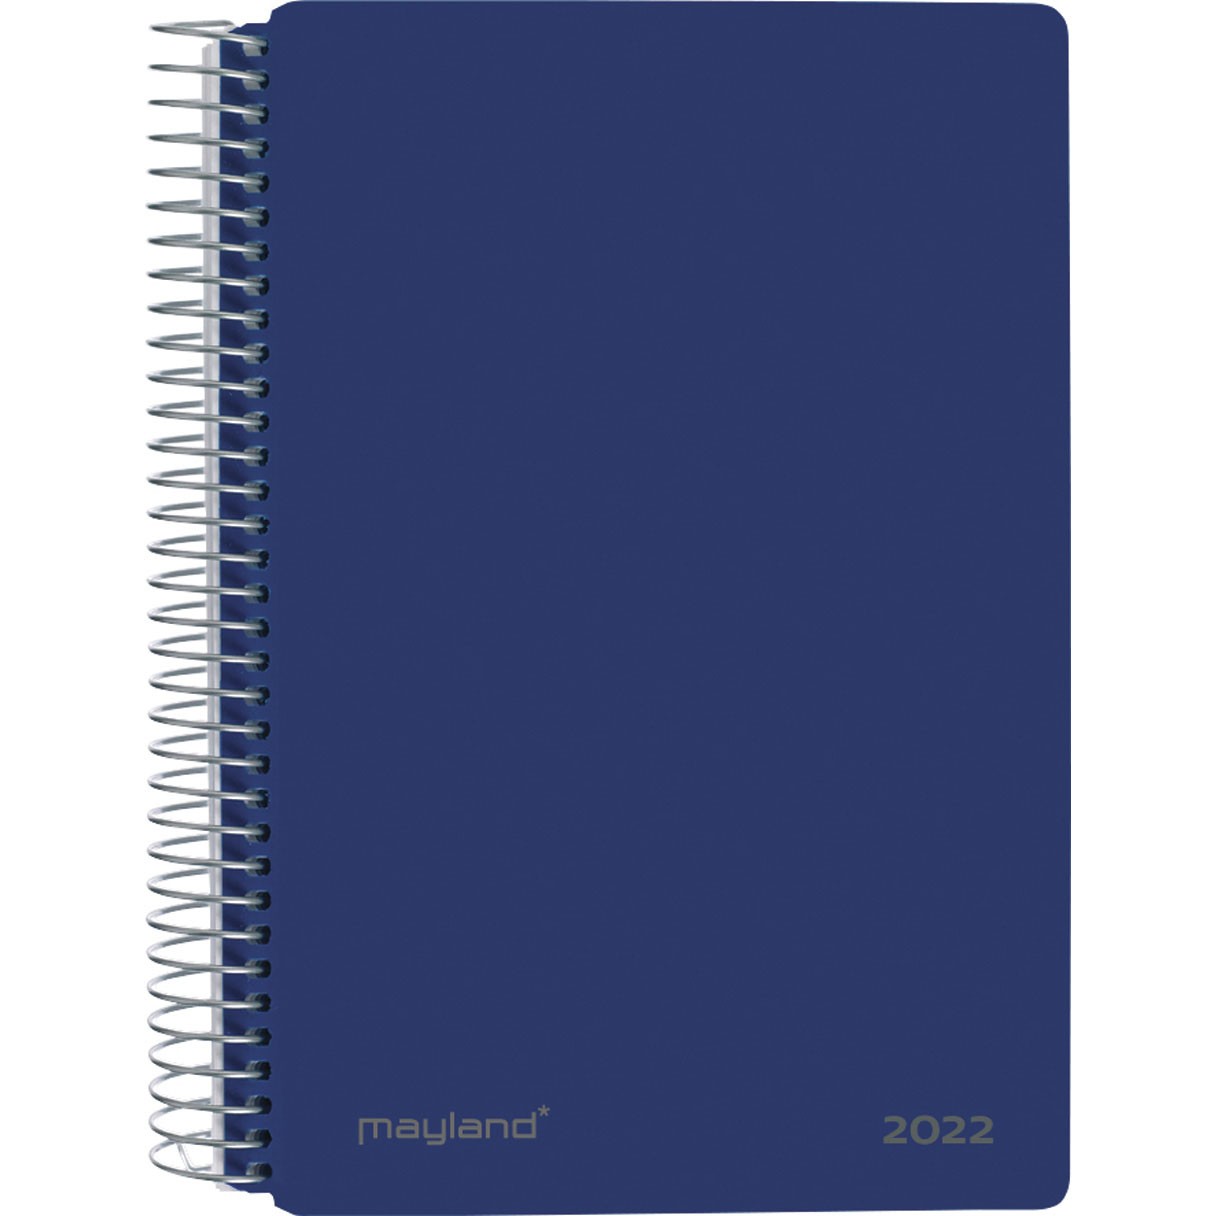 Mayland spiralkalender 1 dag/side 17,5x13,5 cm blå 22210020